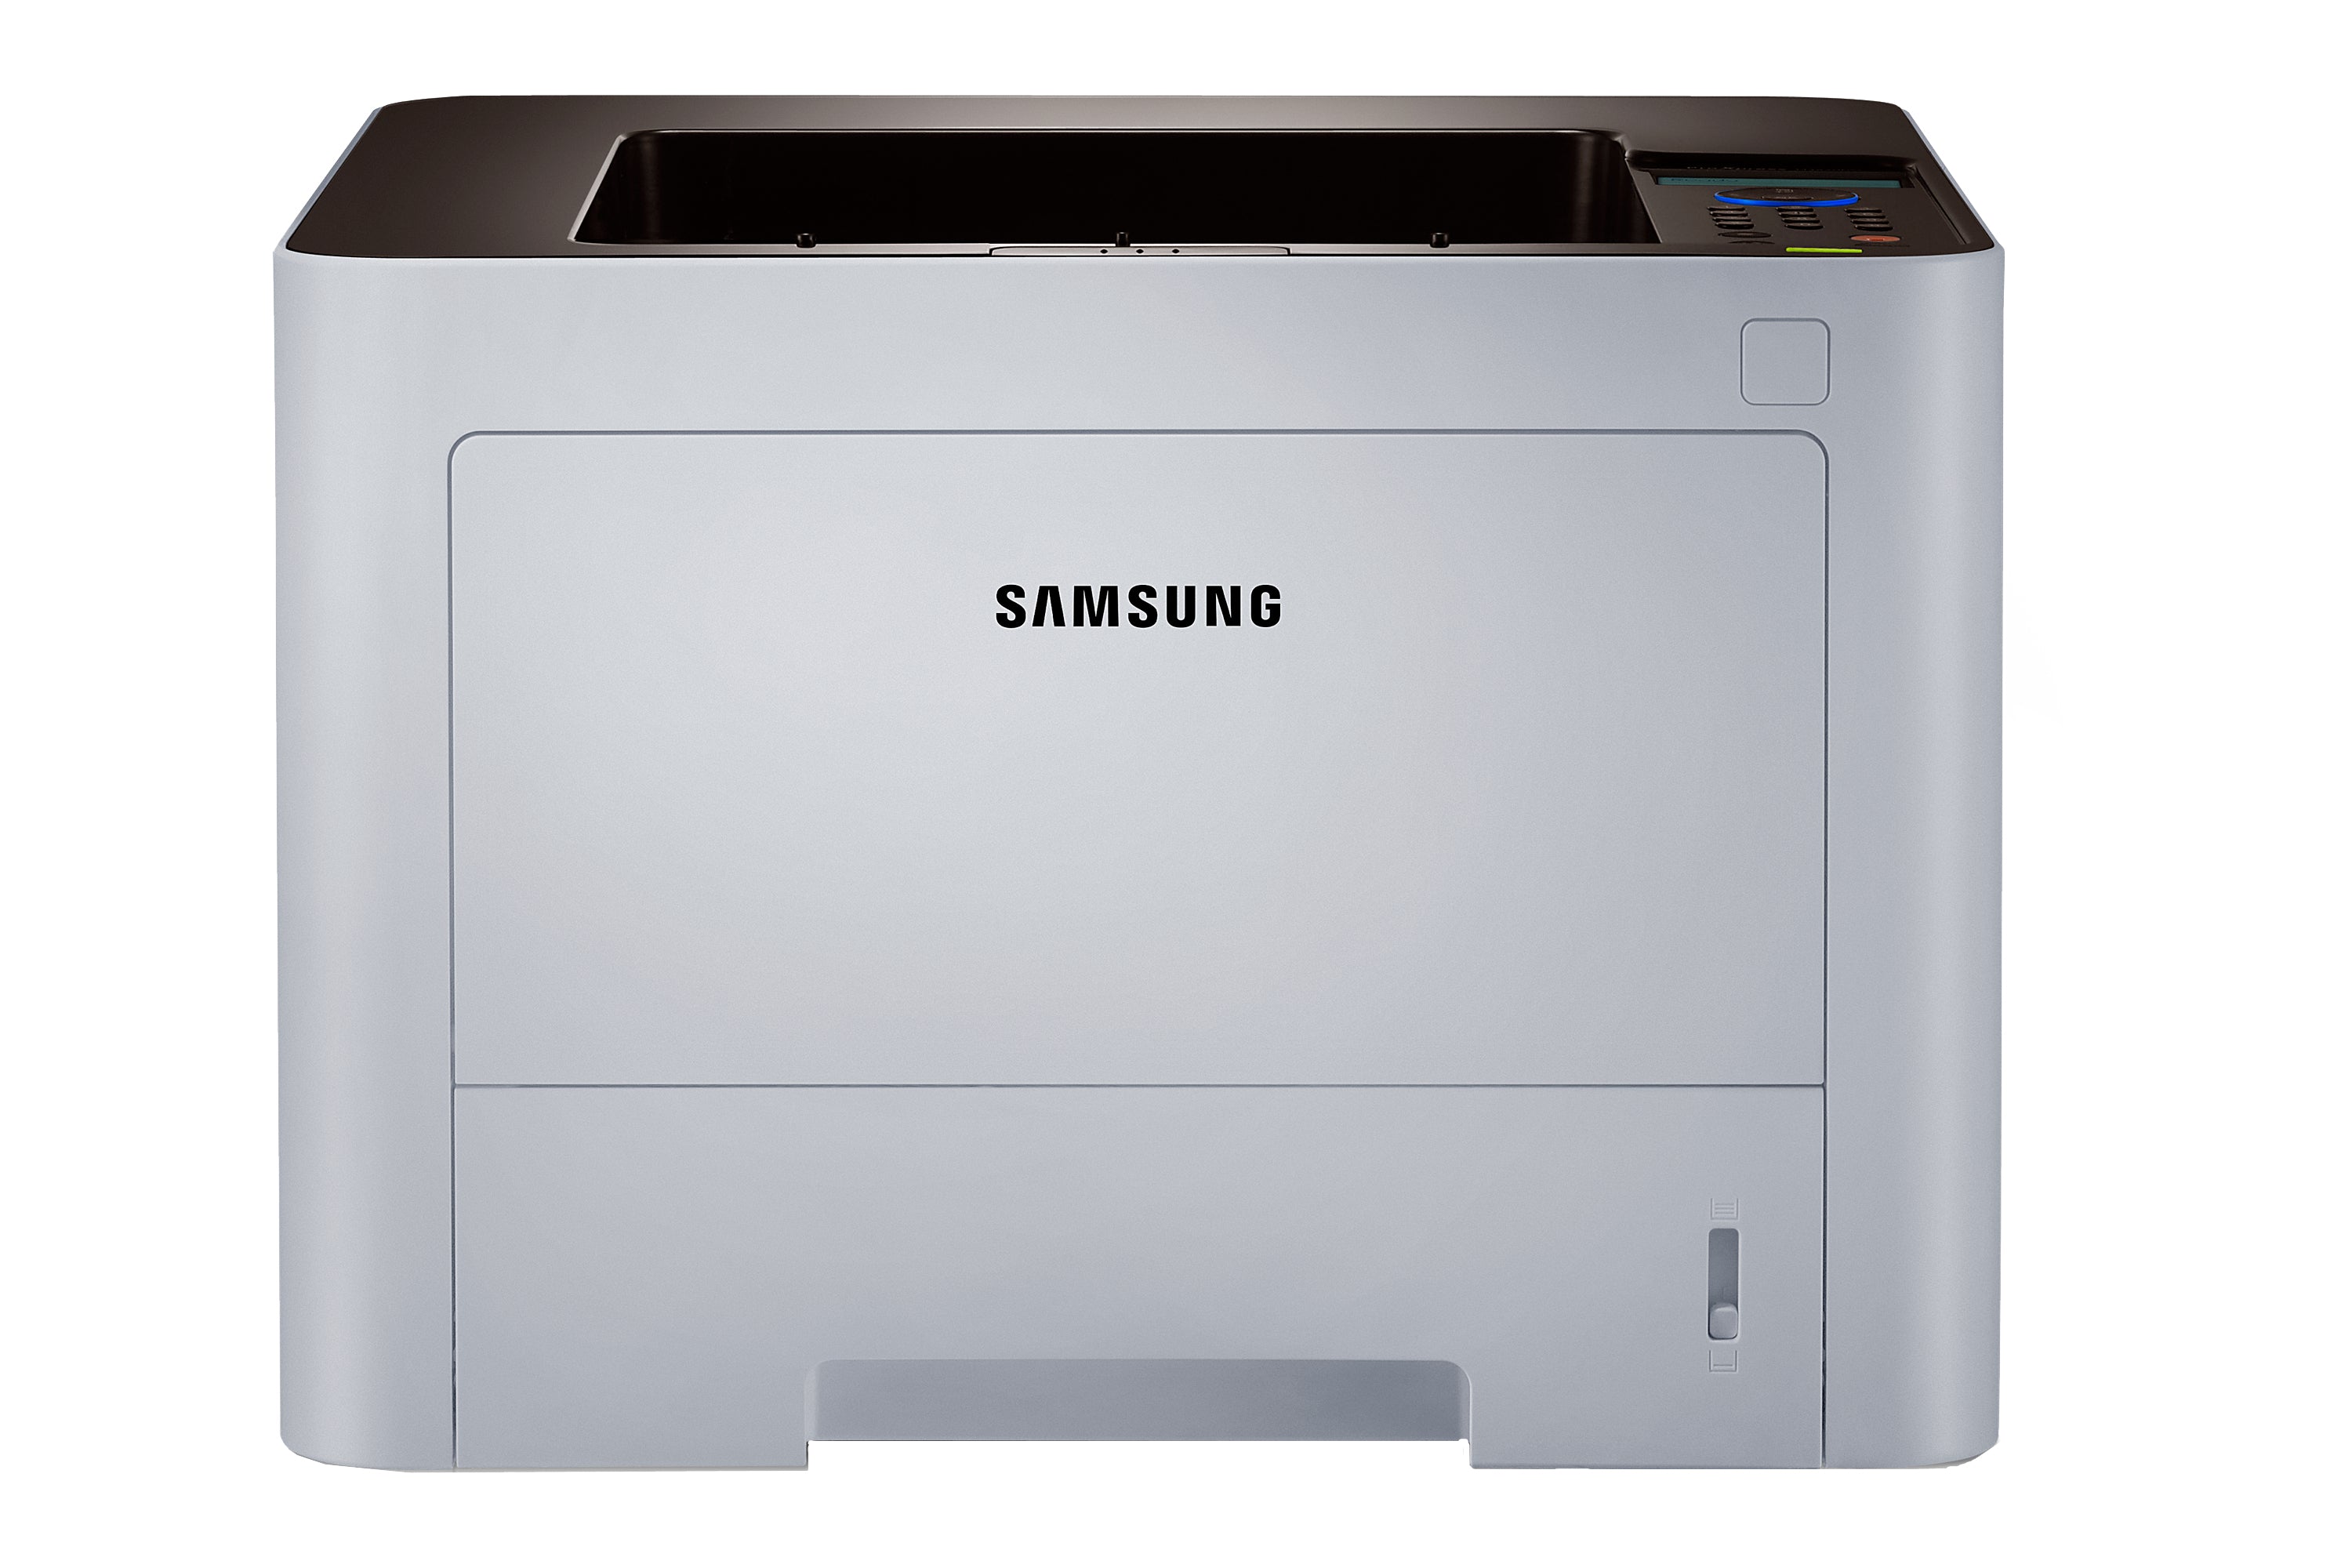 Samsung SLM3820DW/XAA Black & White Multifunction Laser Printer